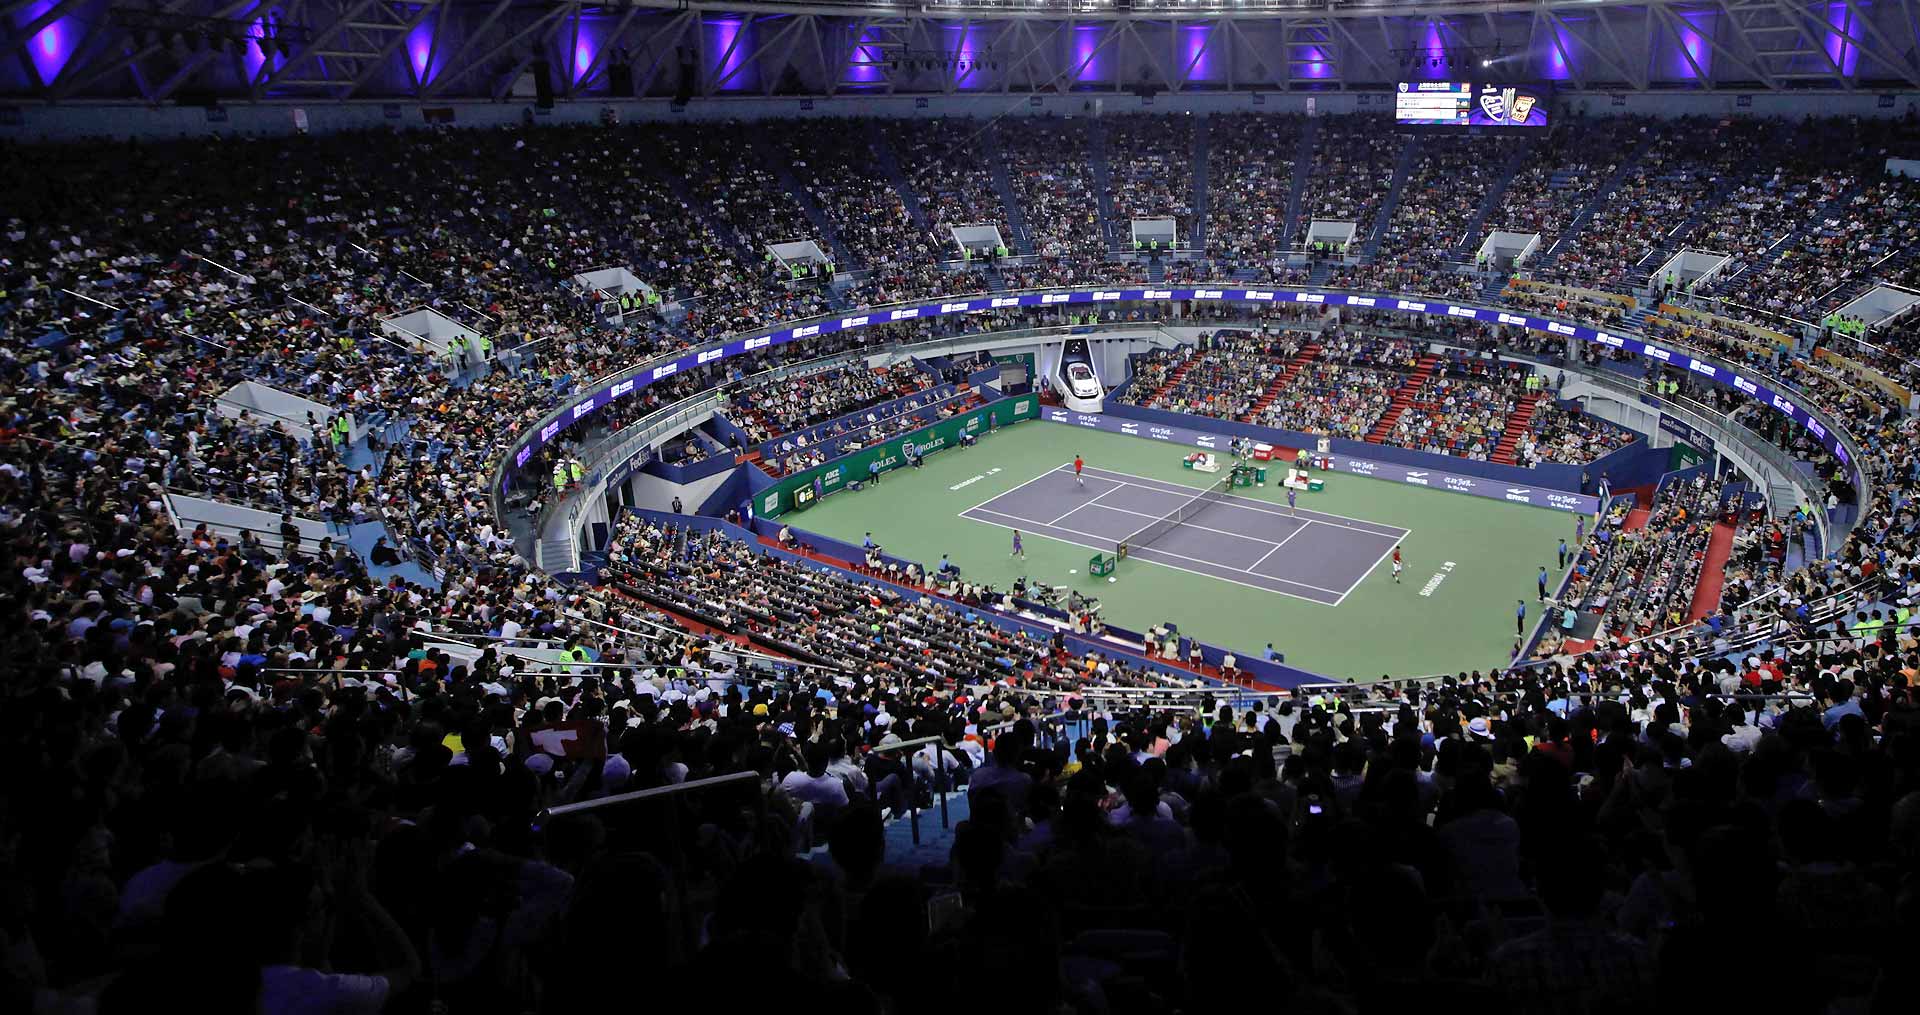 Програмата на турнира в Шанхай за сряда: Федерер в игра